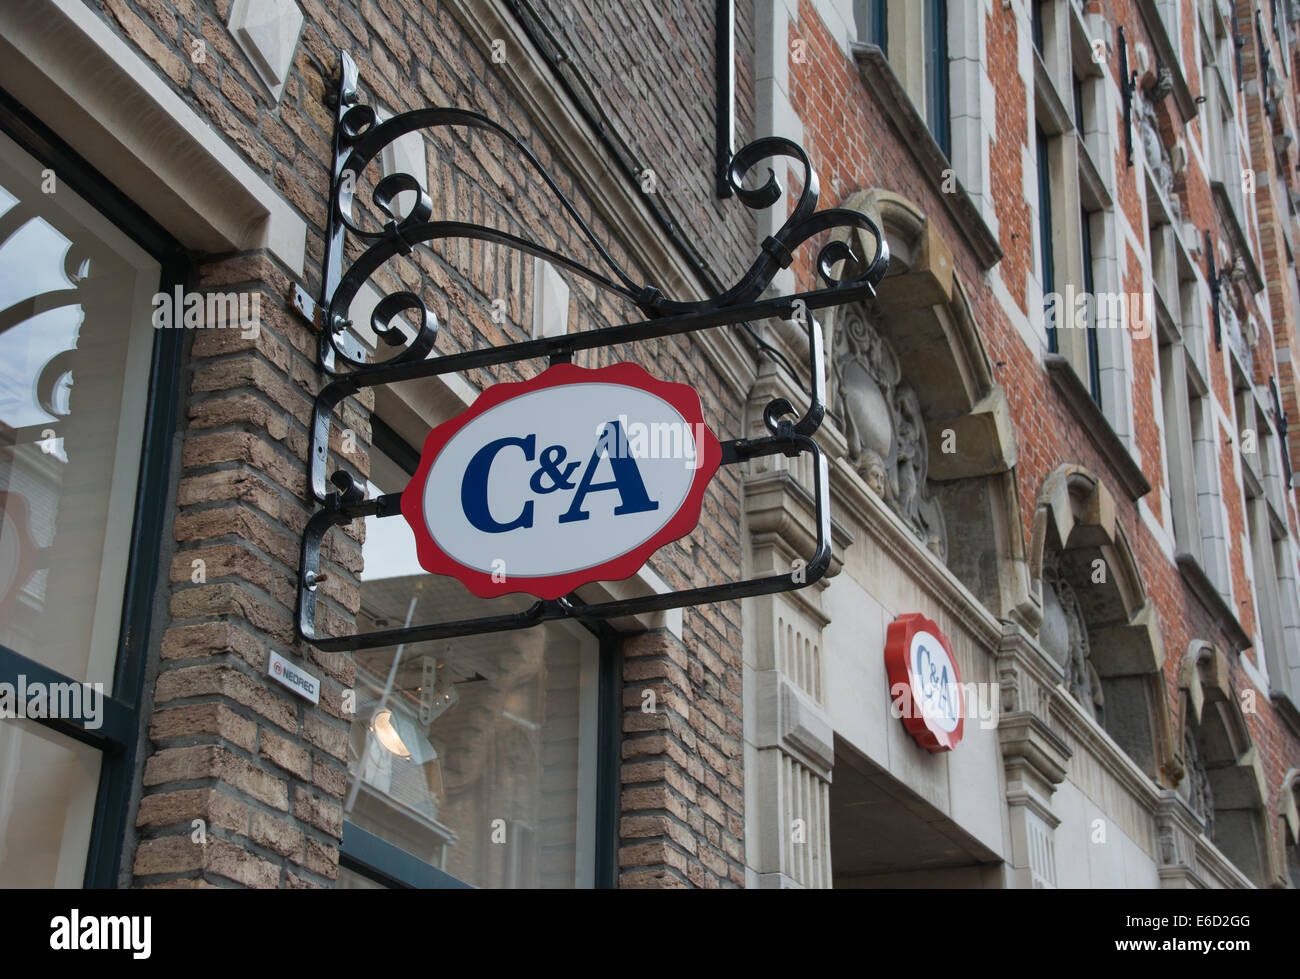 Enseigne de magasin de vêtements C&A. Bruges, Belgique Banque D'Images